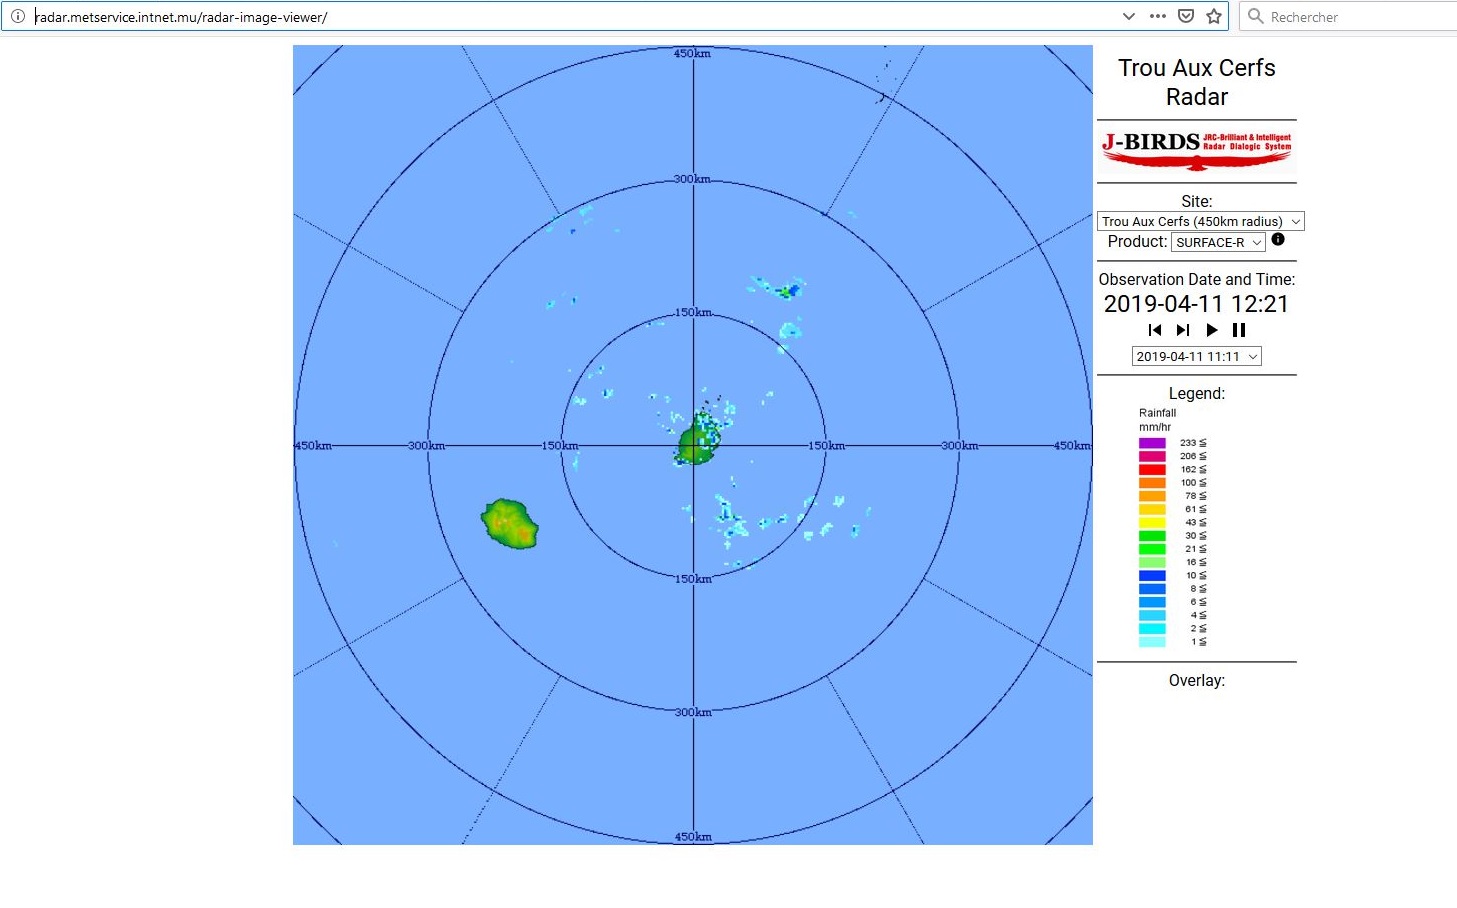 16h: MAURICE: les images du tout nouveau radar de Trou Aux Cerfs accessibles sur le site de MMS